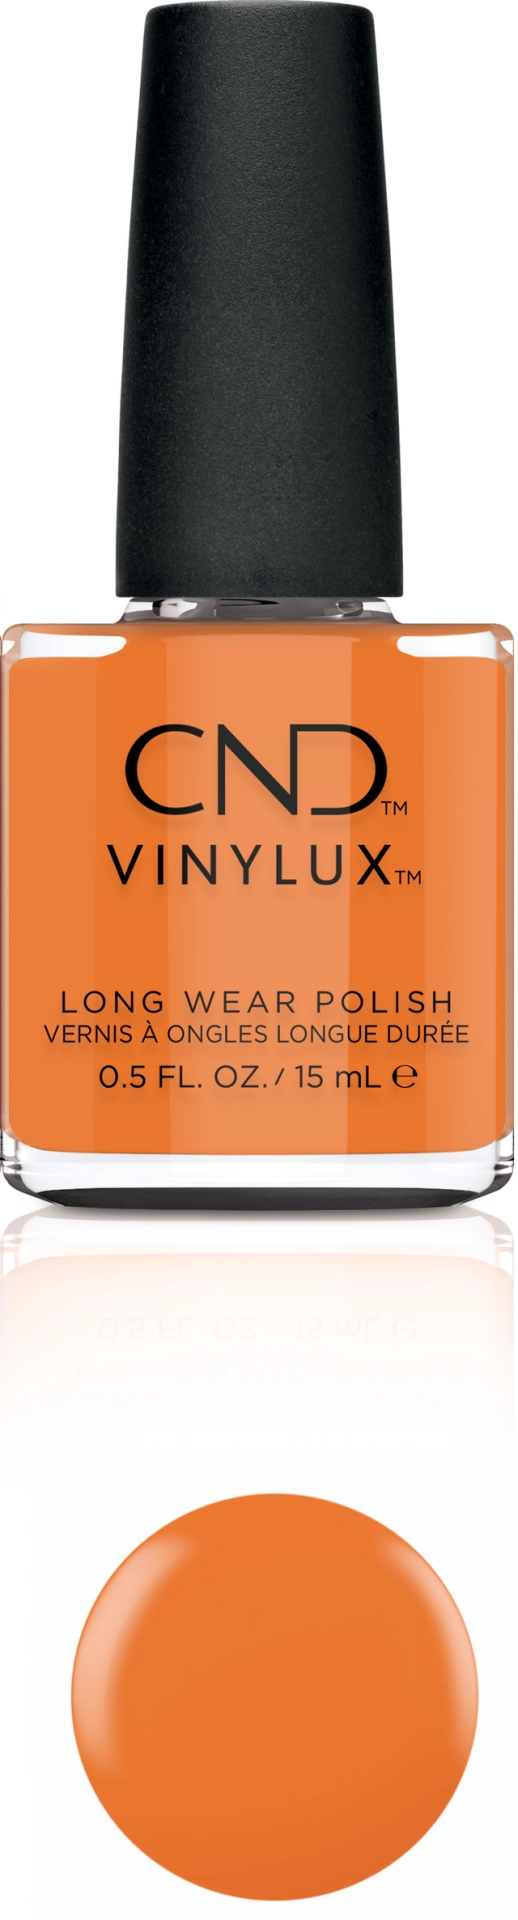 CND - Vinylux Silky Sienna